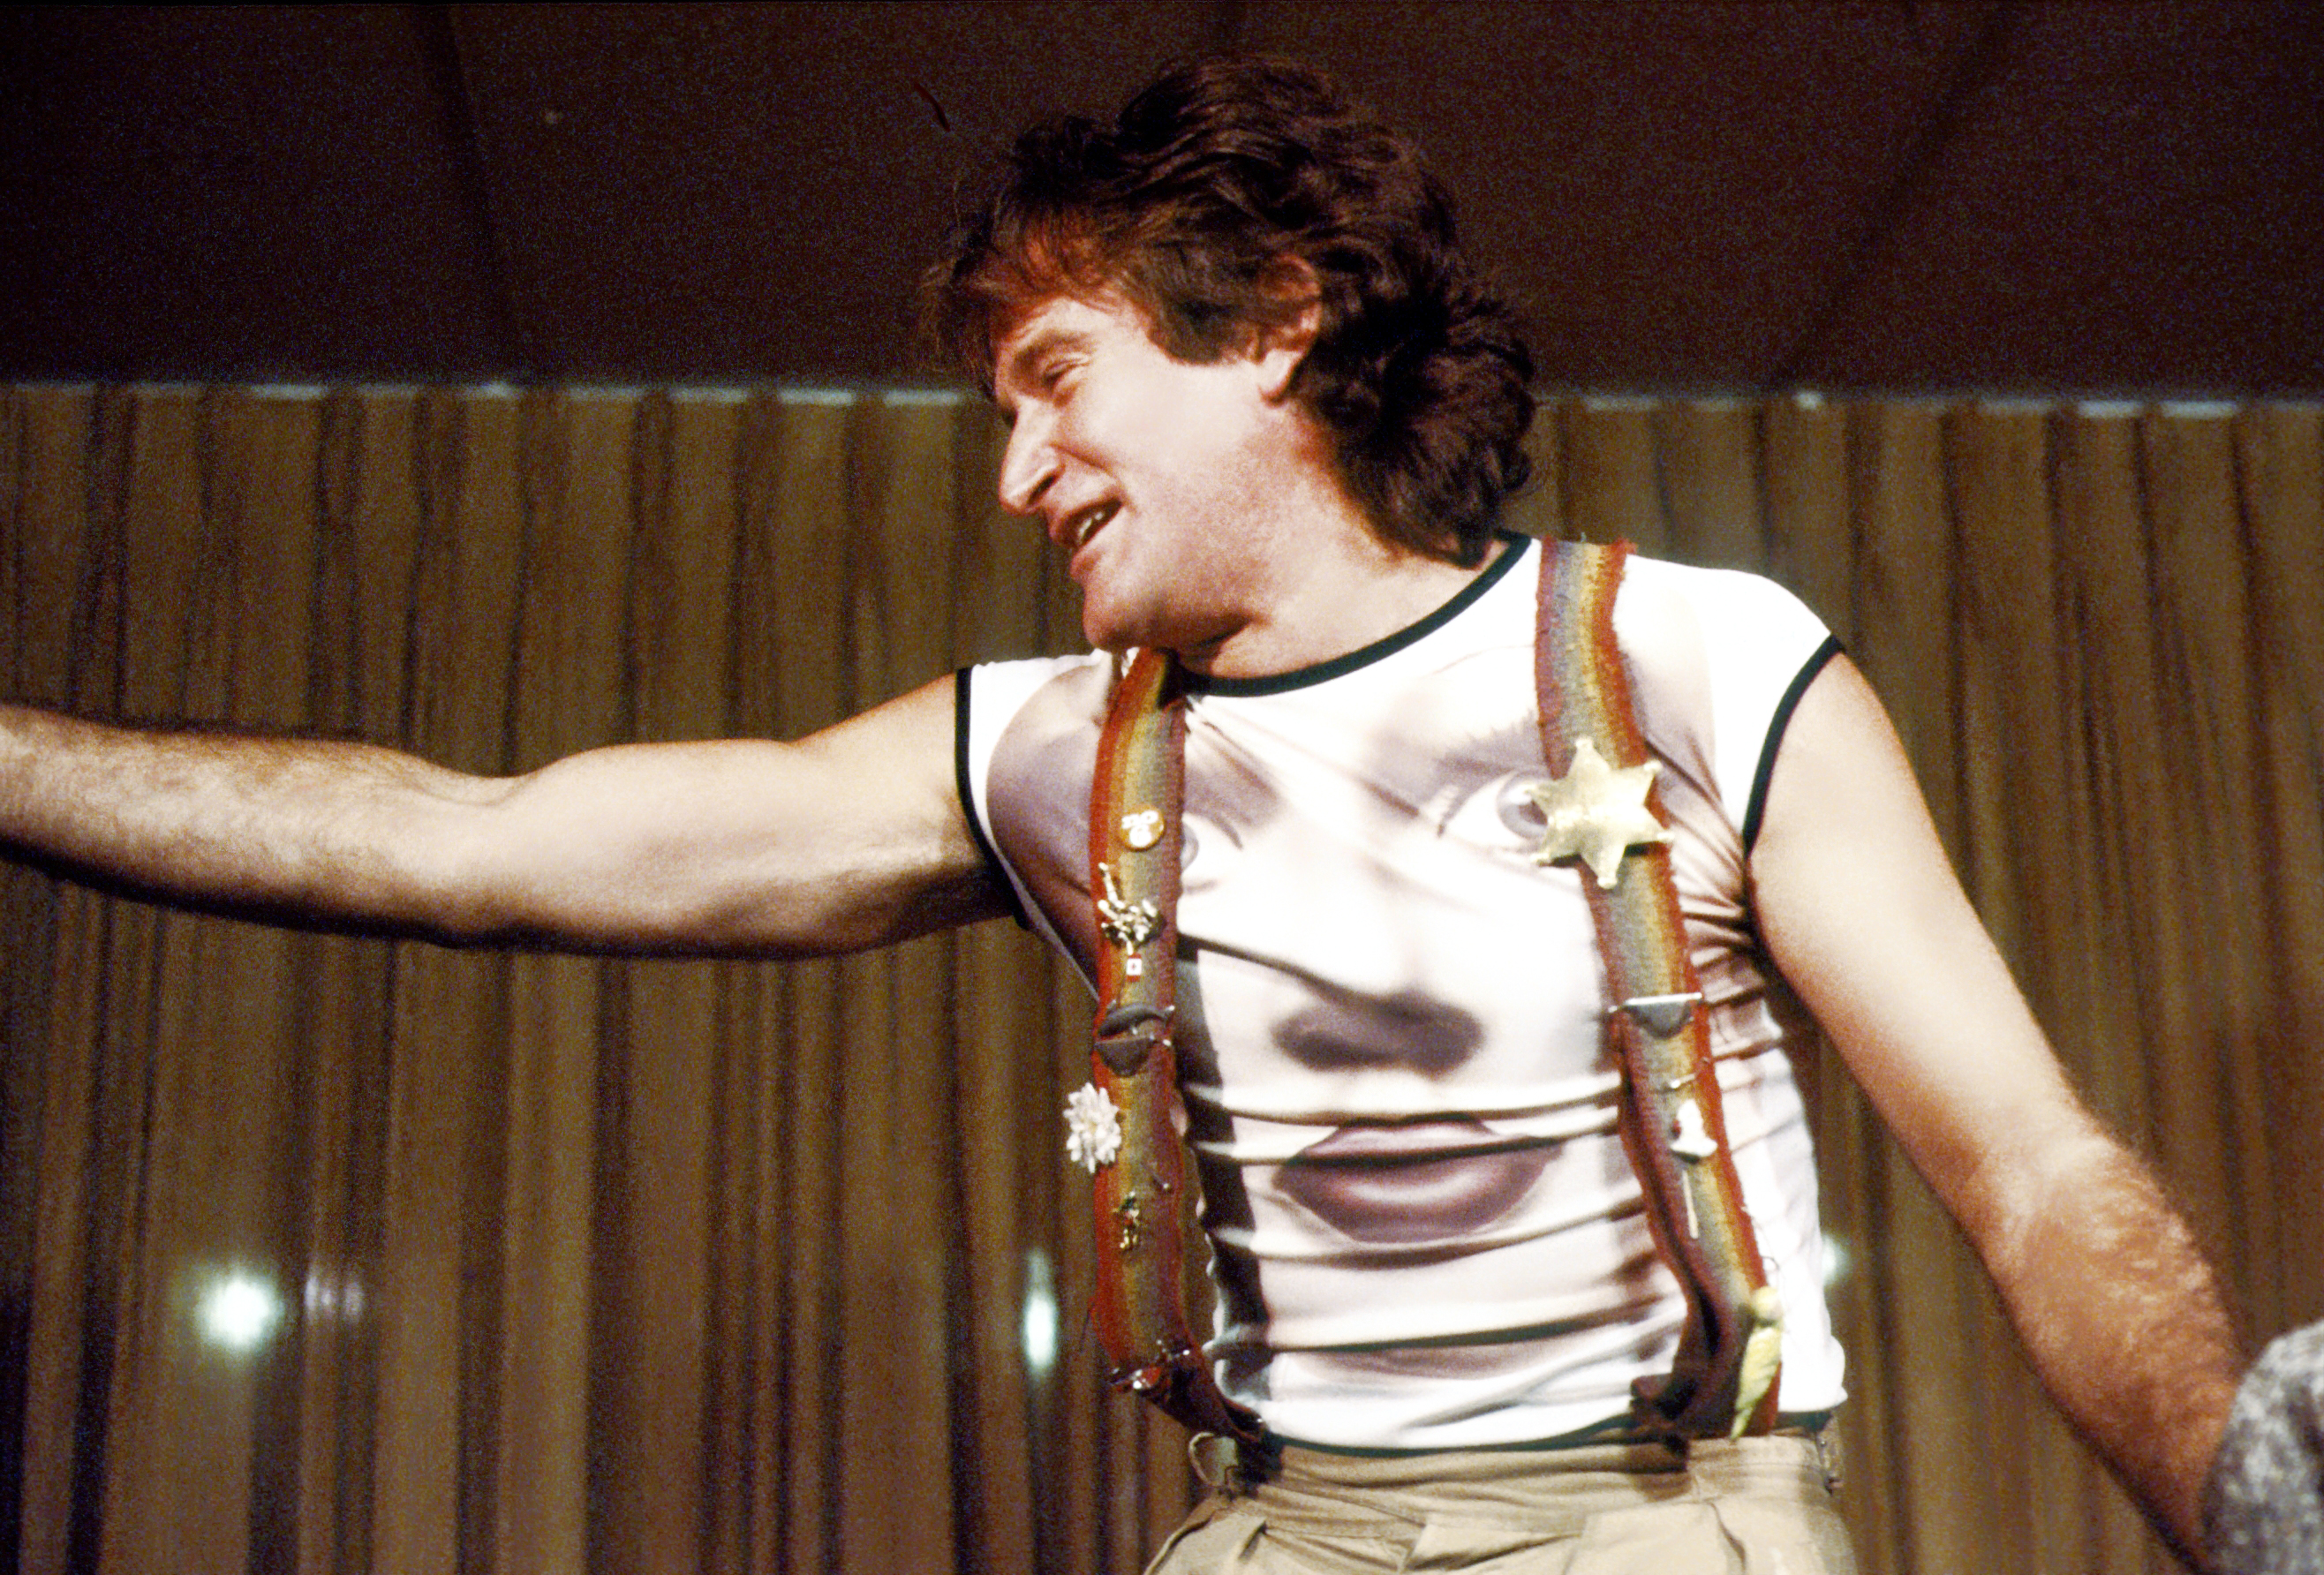 Robin Williams gökkuşağı askılı ve yüzü baskılı tişörtlü 1979'da Roxy Theatre'da sahne alırken